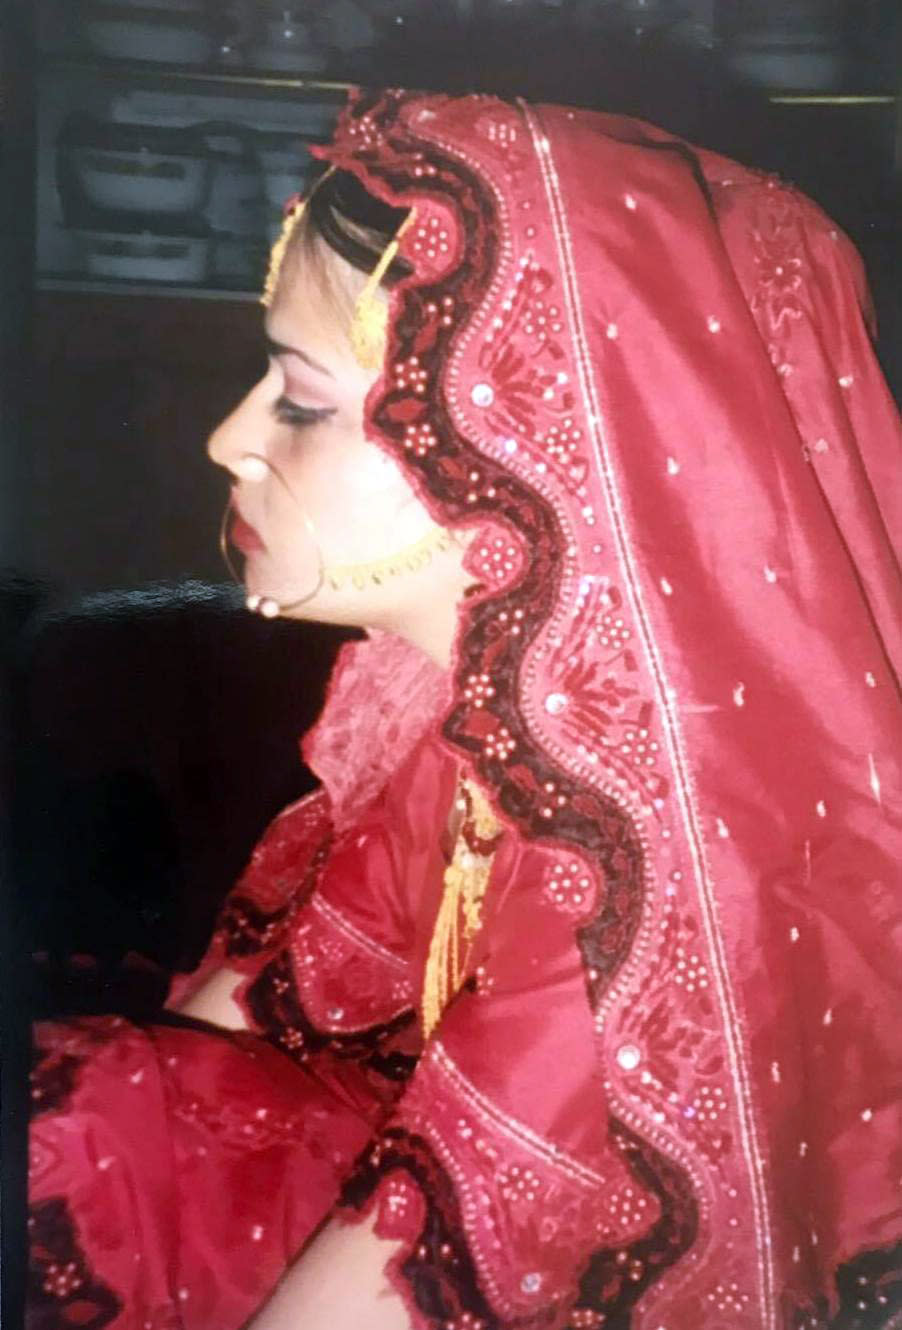 Naila Amin was 13 on her wedding day in Pakistan. (Courtesy Naila Amin)